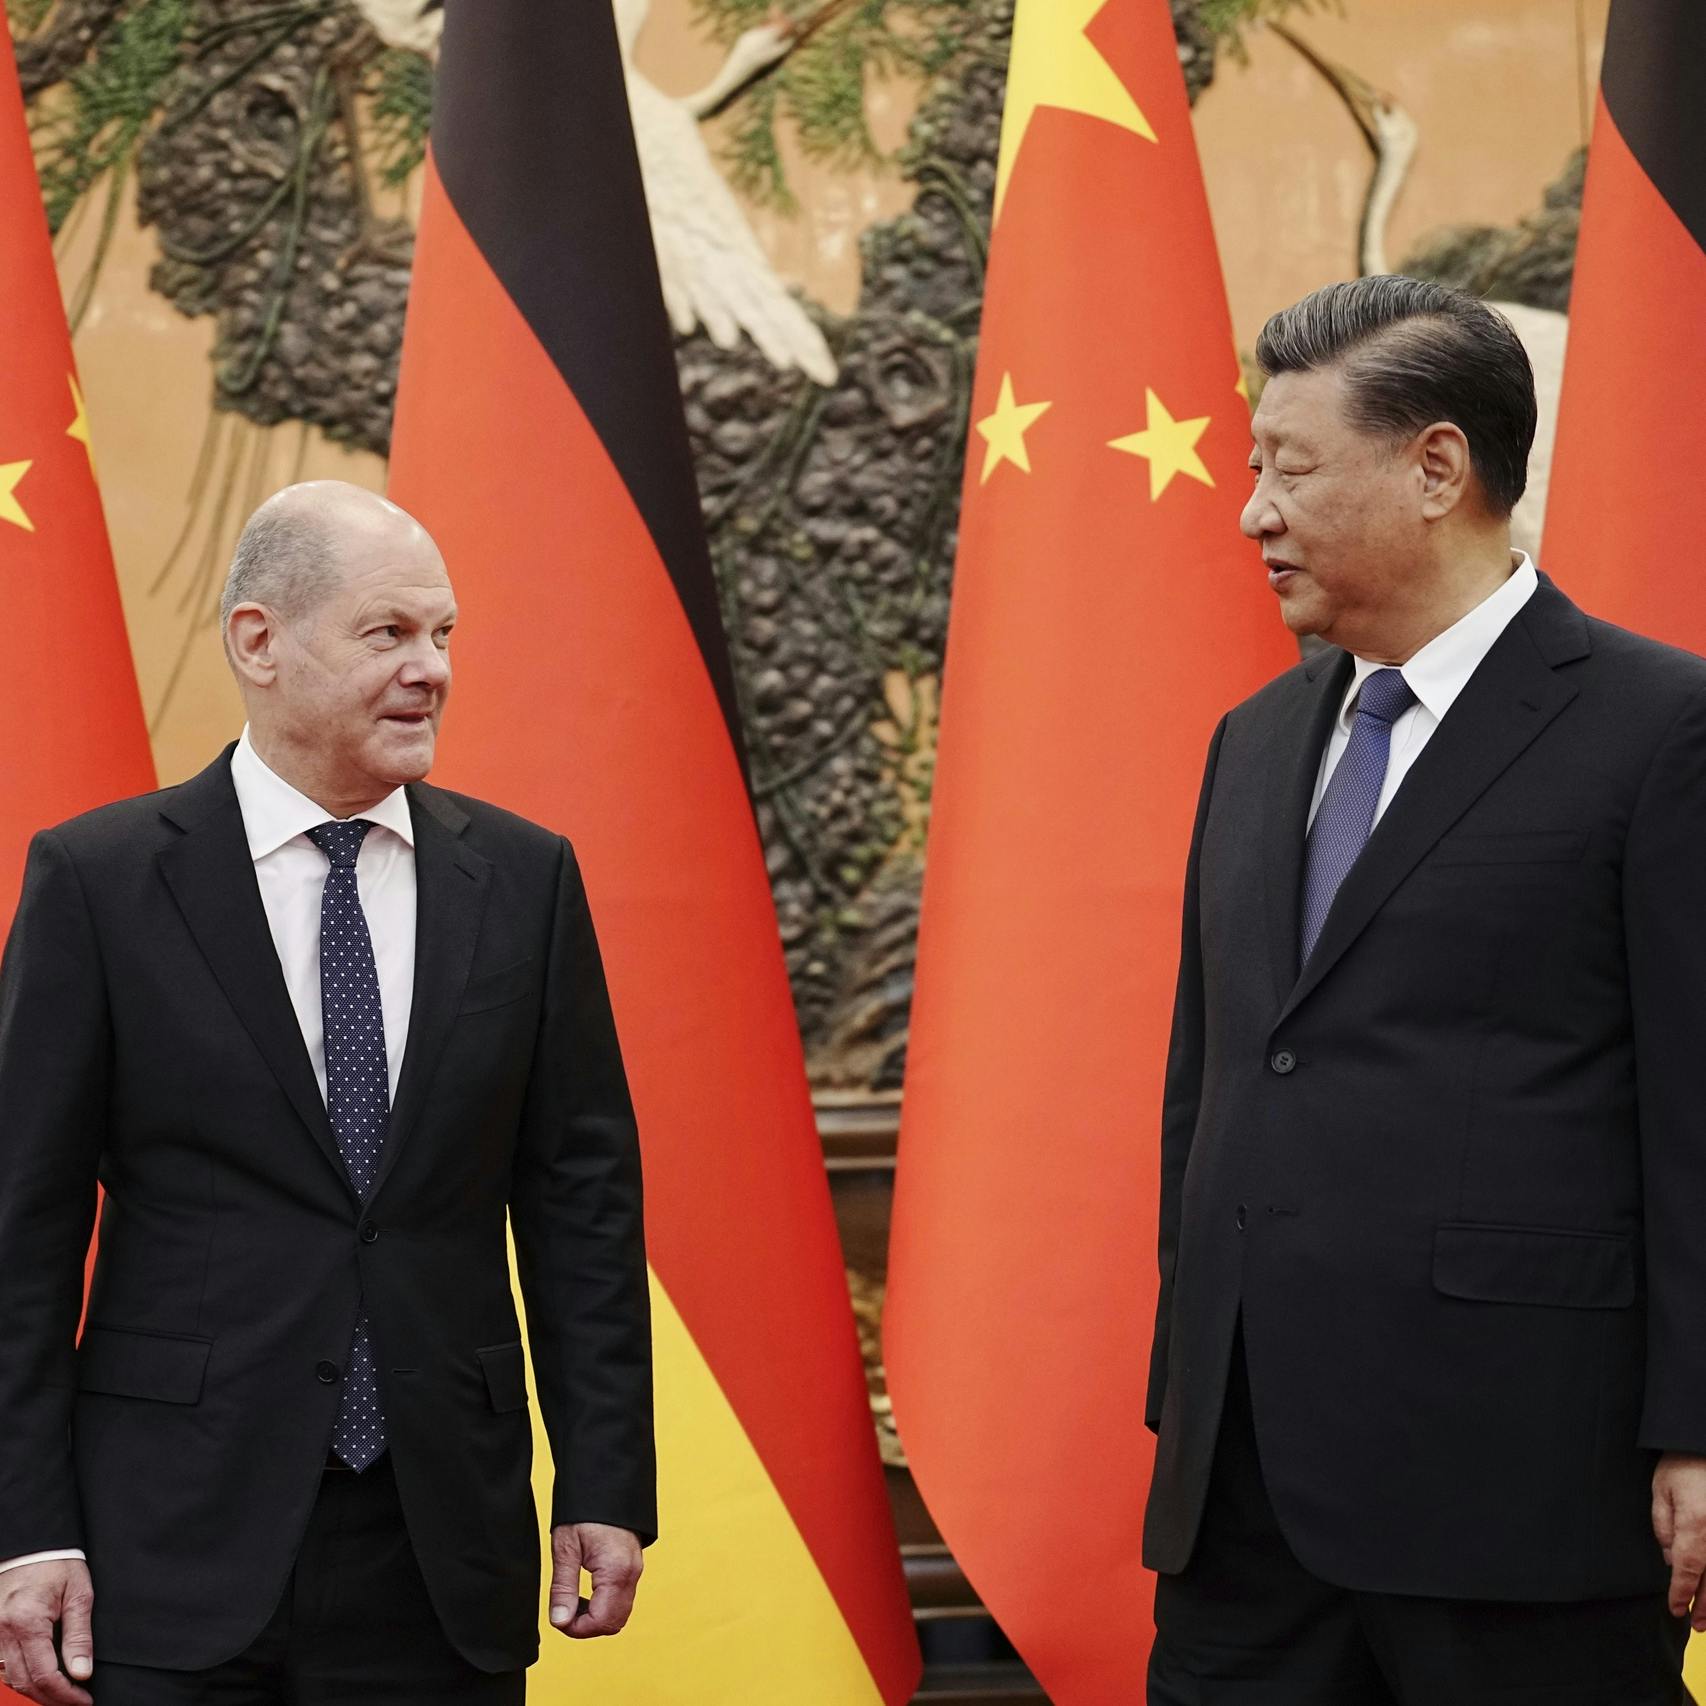 'China bereidt confrontatie voor; wantrouwen niet goed'